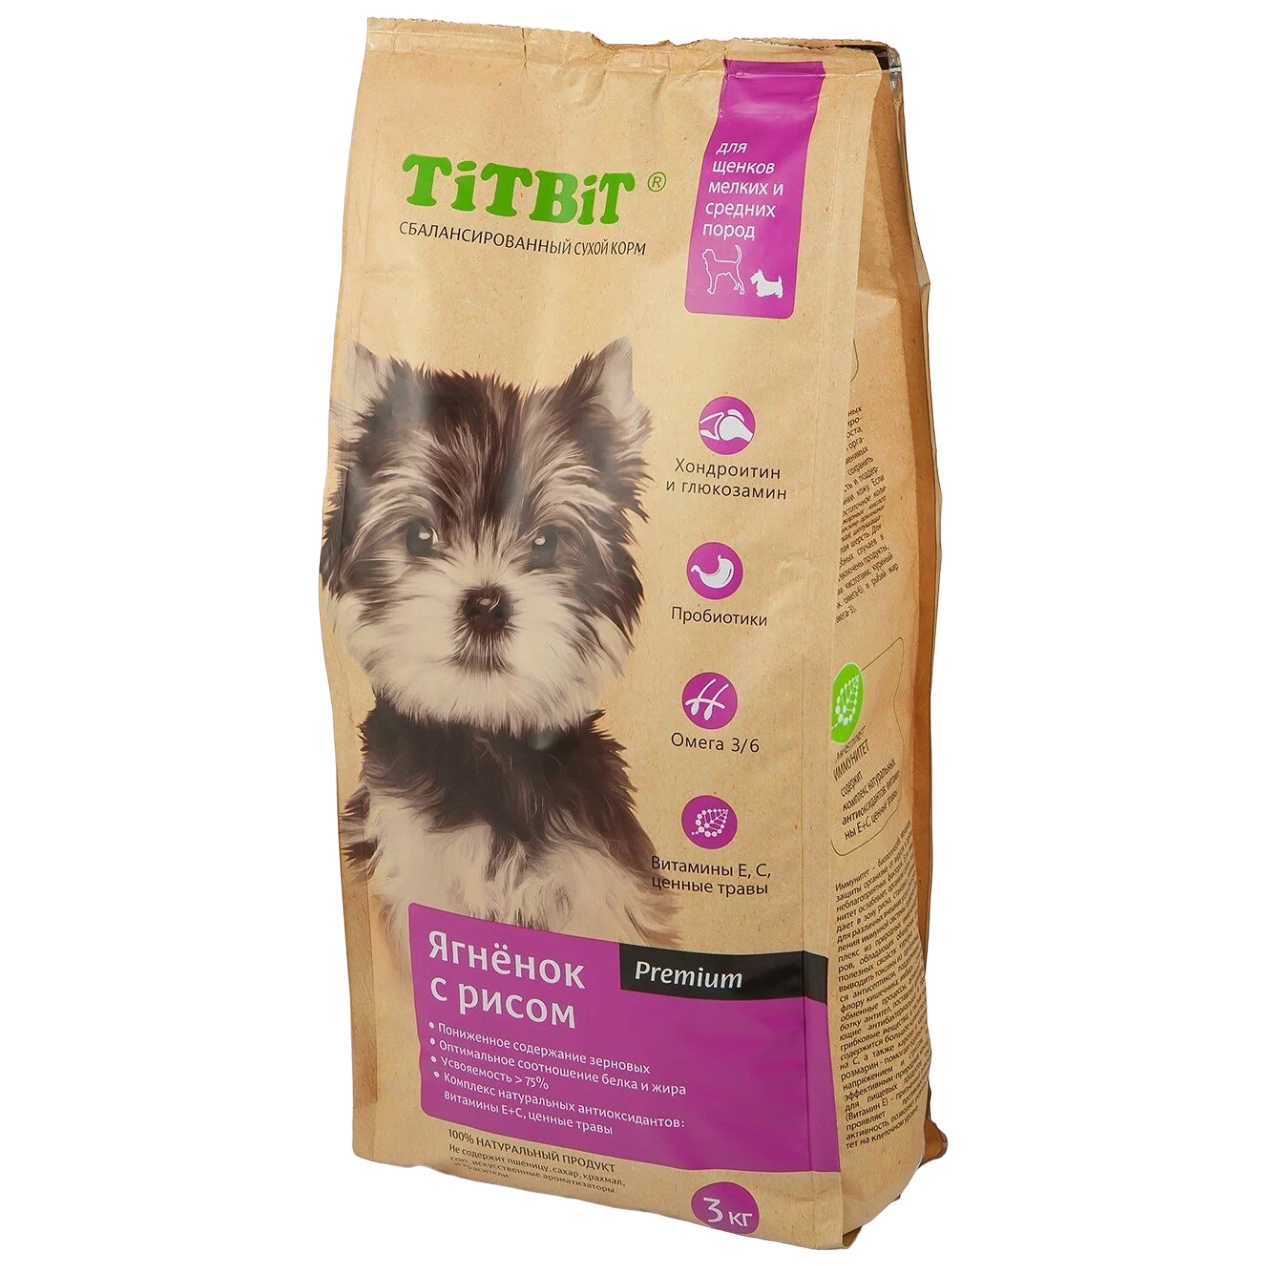 Сухой корм для щенков маленьких и средних пород TiTBiT Premium, ягненок и рис, 3кг